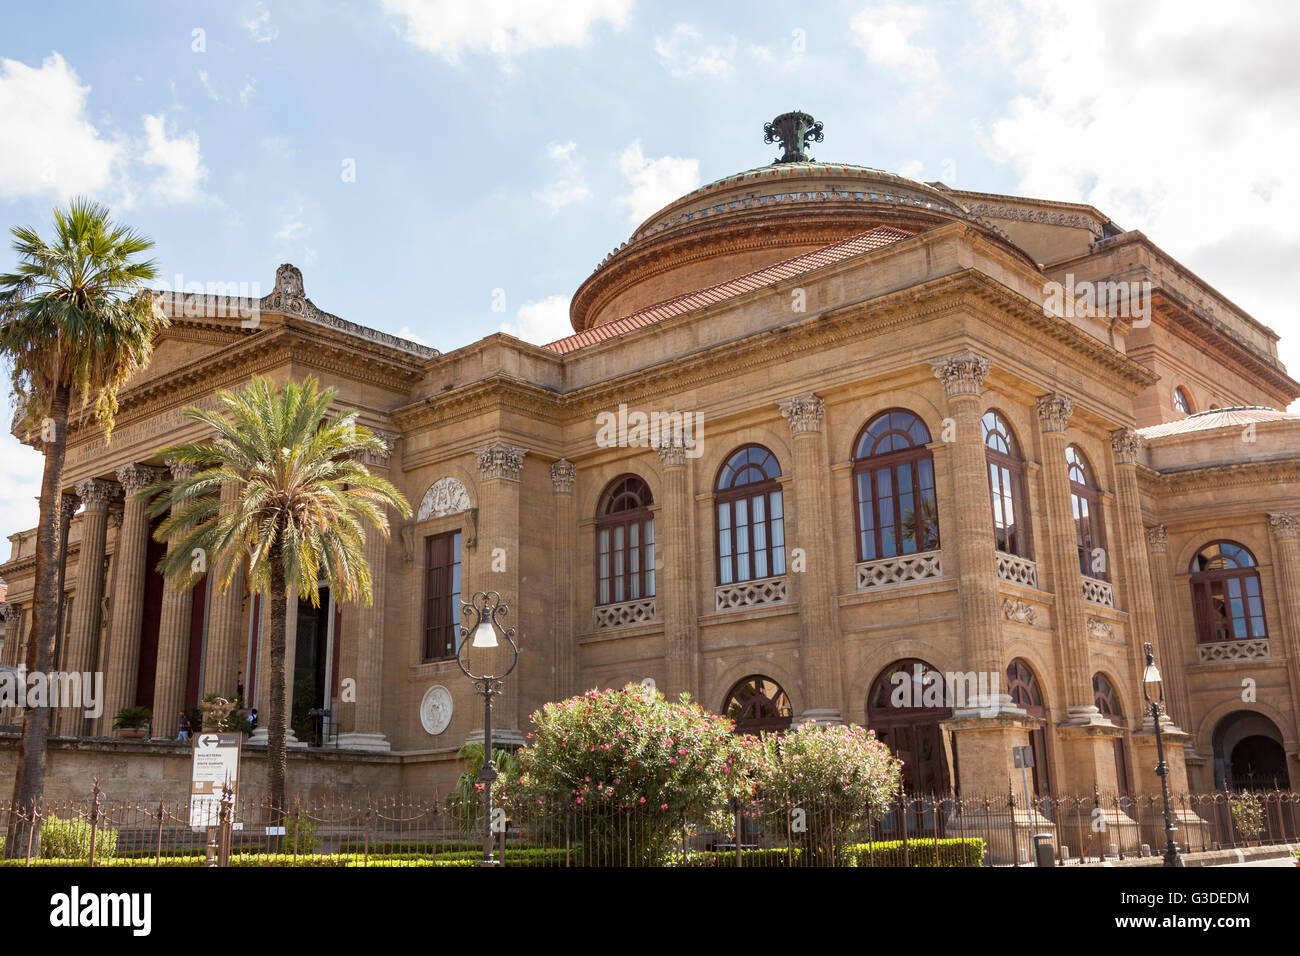 Teatro Massimo de Palerme, Opéra, Piazza Giuseppe Verdi, Palerme, Sicile, Italie Banque D'Images